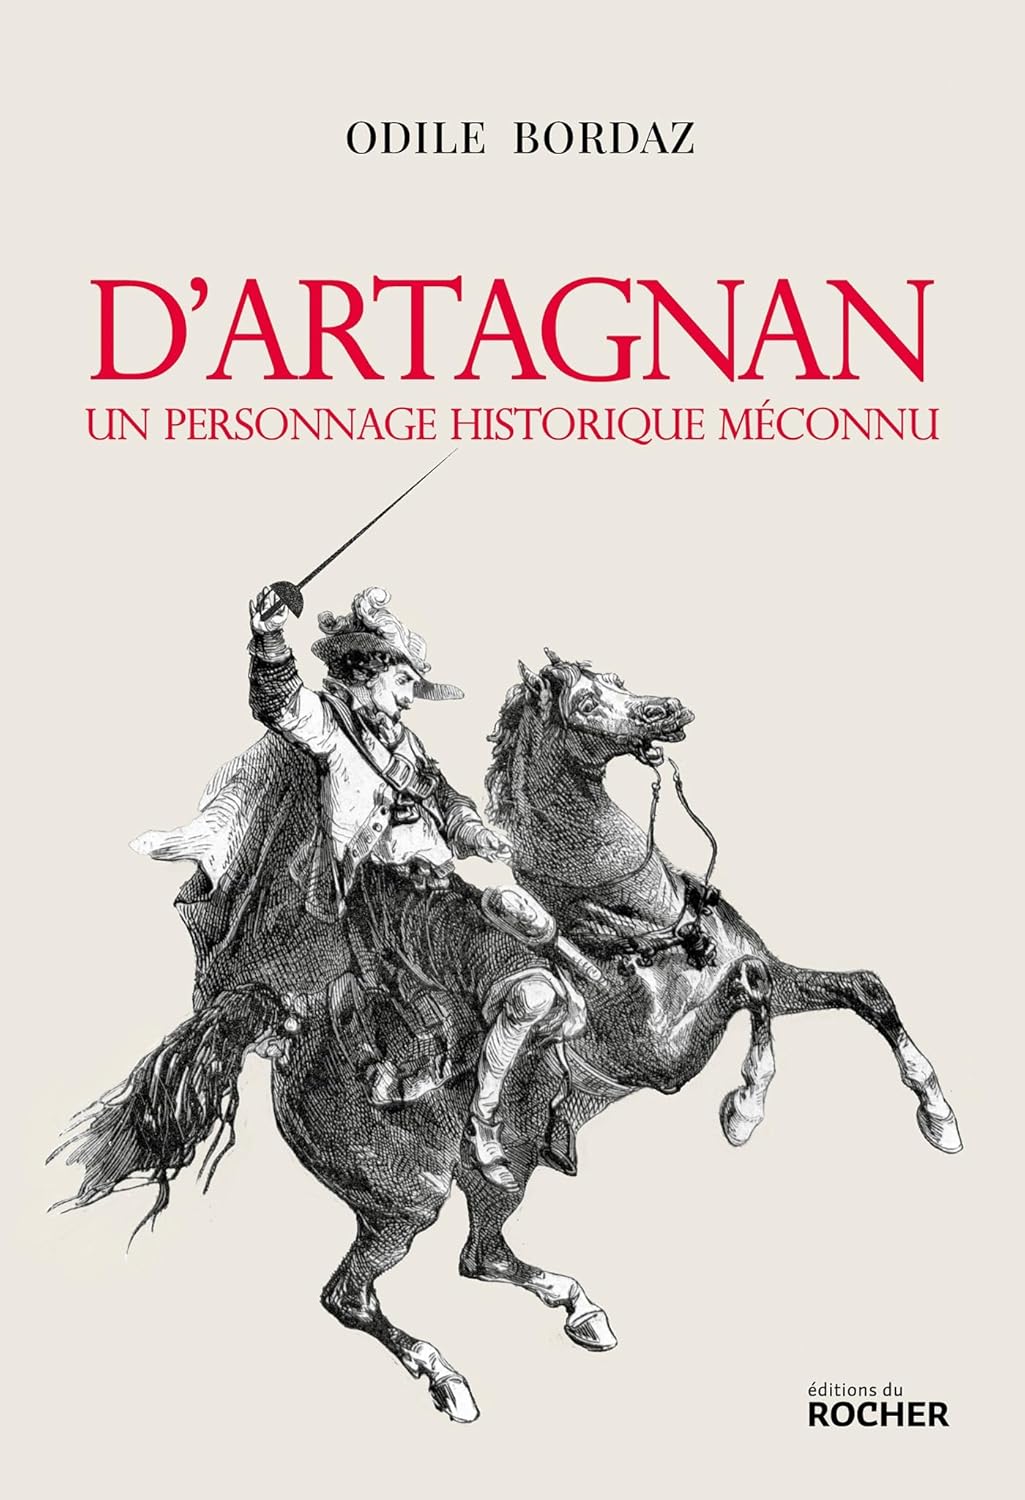 O.Bordaz  D'Artagnan. Un personnage historique méconnu